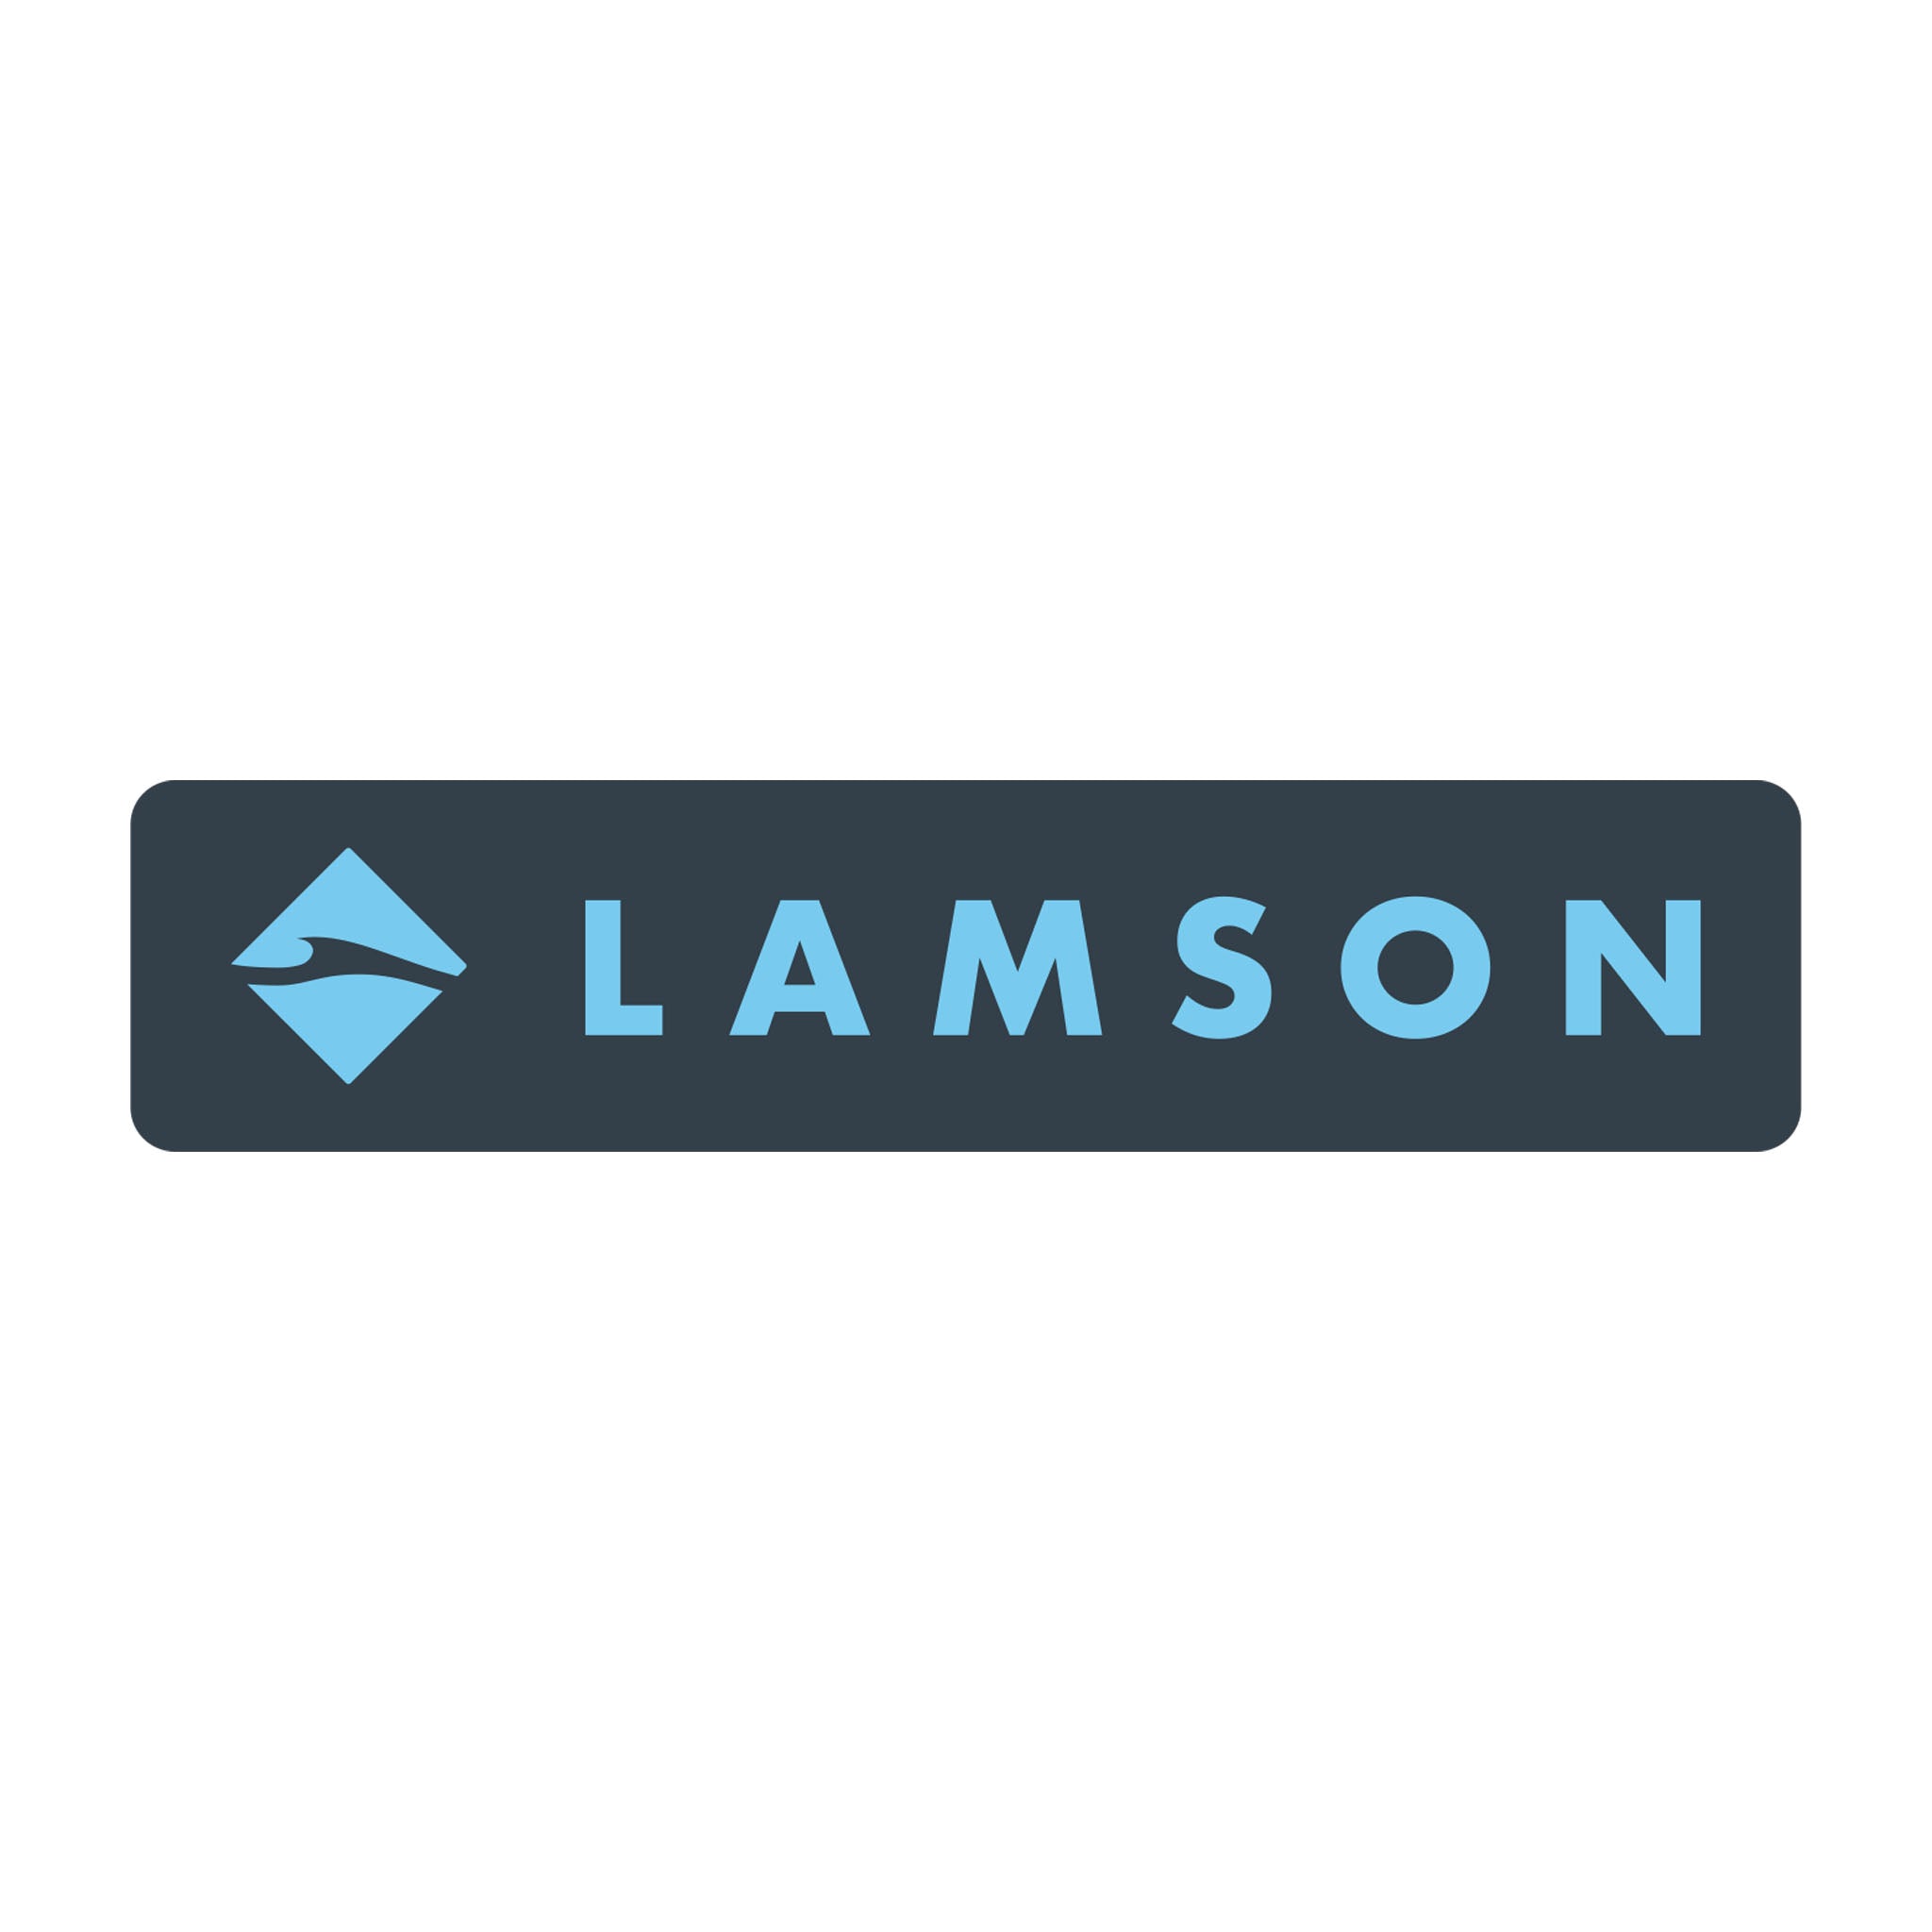 Mini Bumper Sticker Accessories LAMSON Gray and Light Blue  